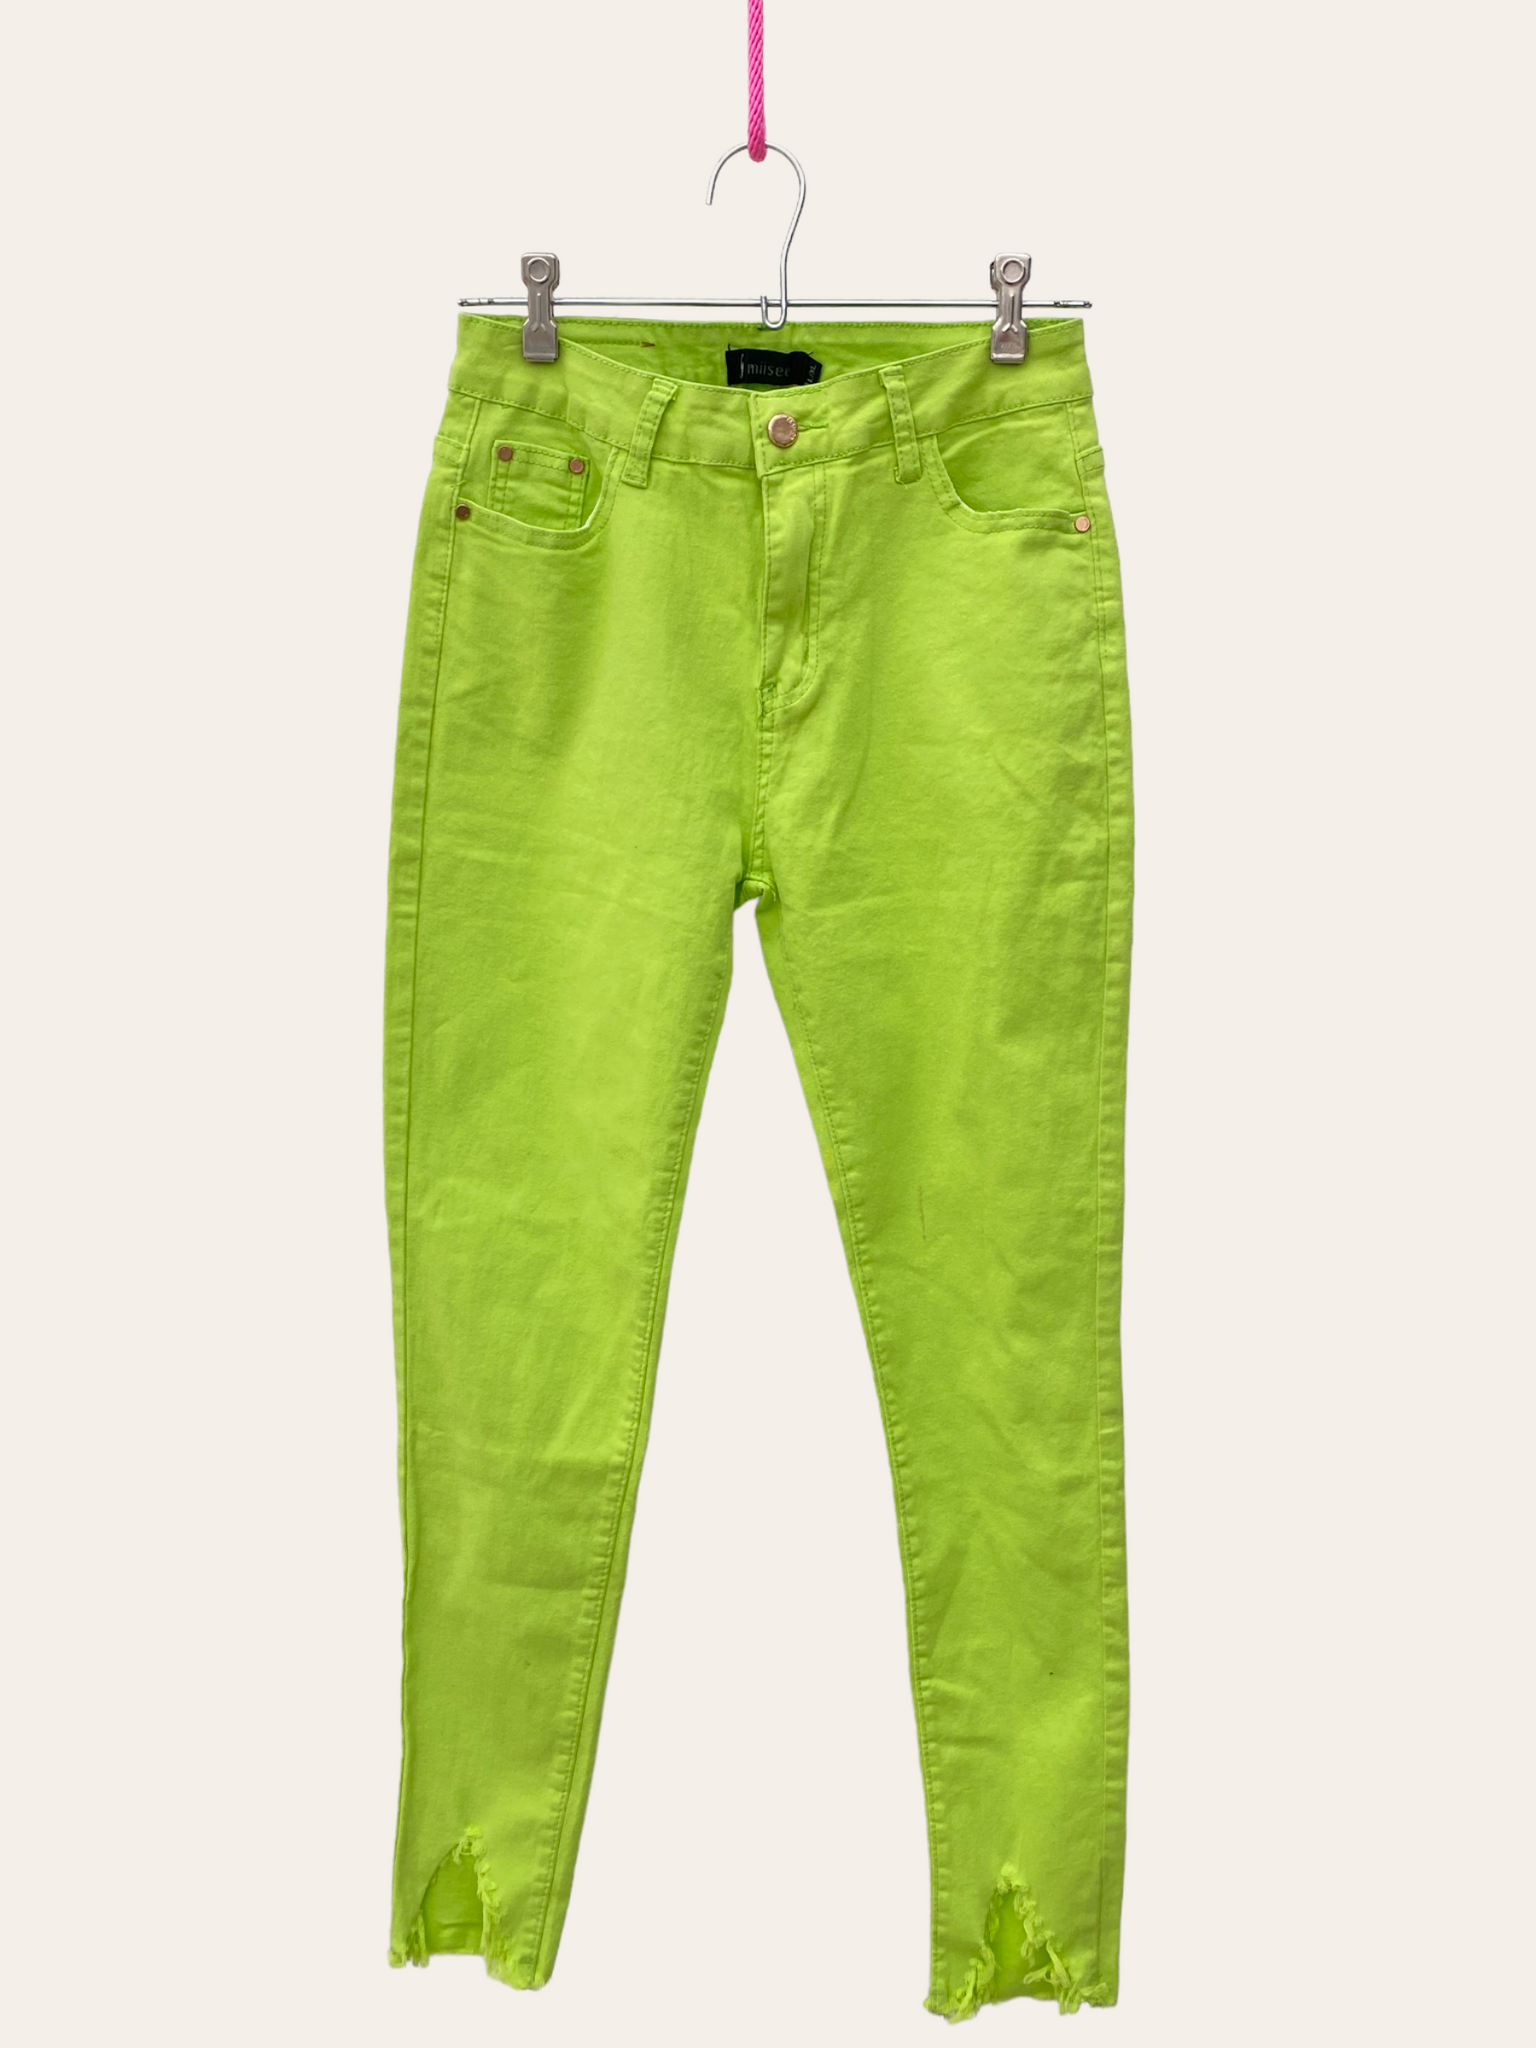 Pantalones verde neón - Pre-loved